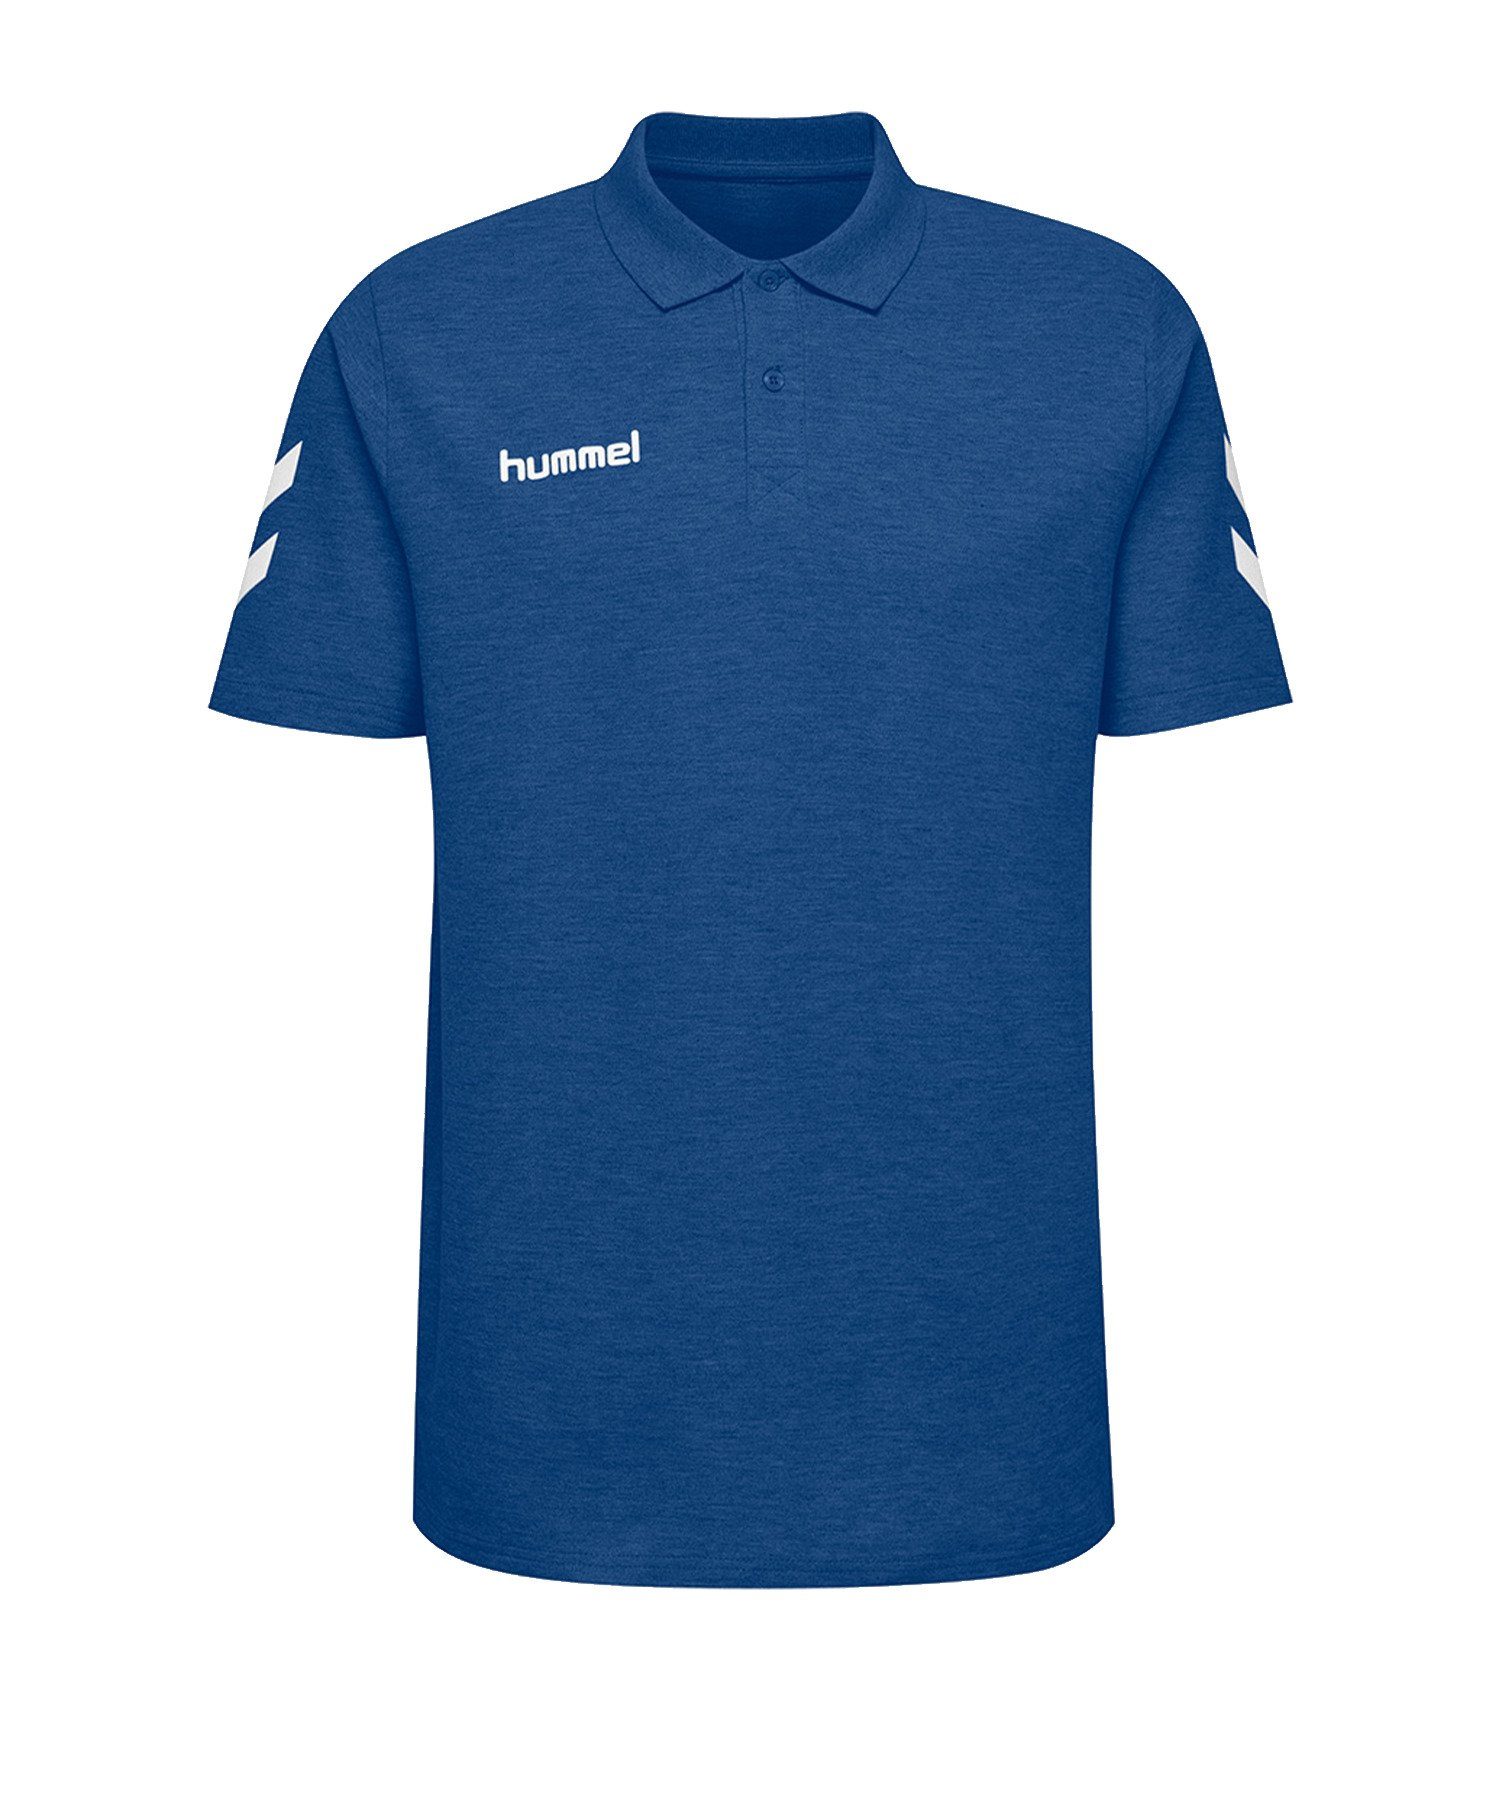 hummel T-Shirt Cotton Poloshirt default Blauweiss